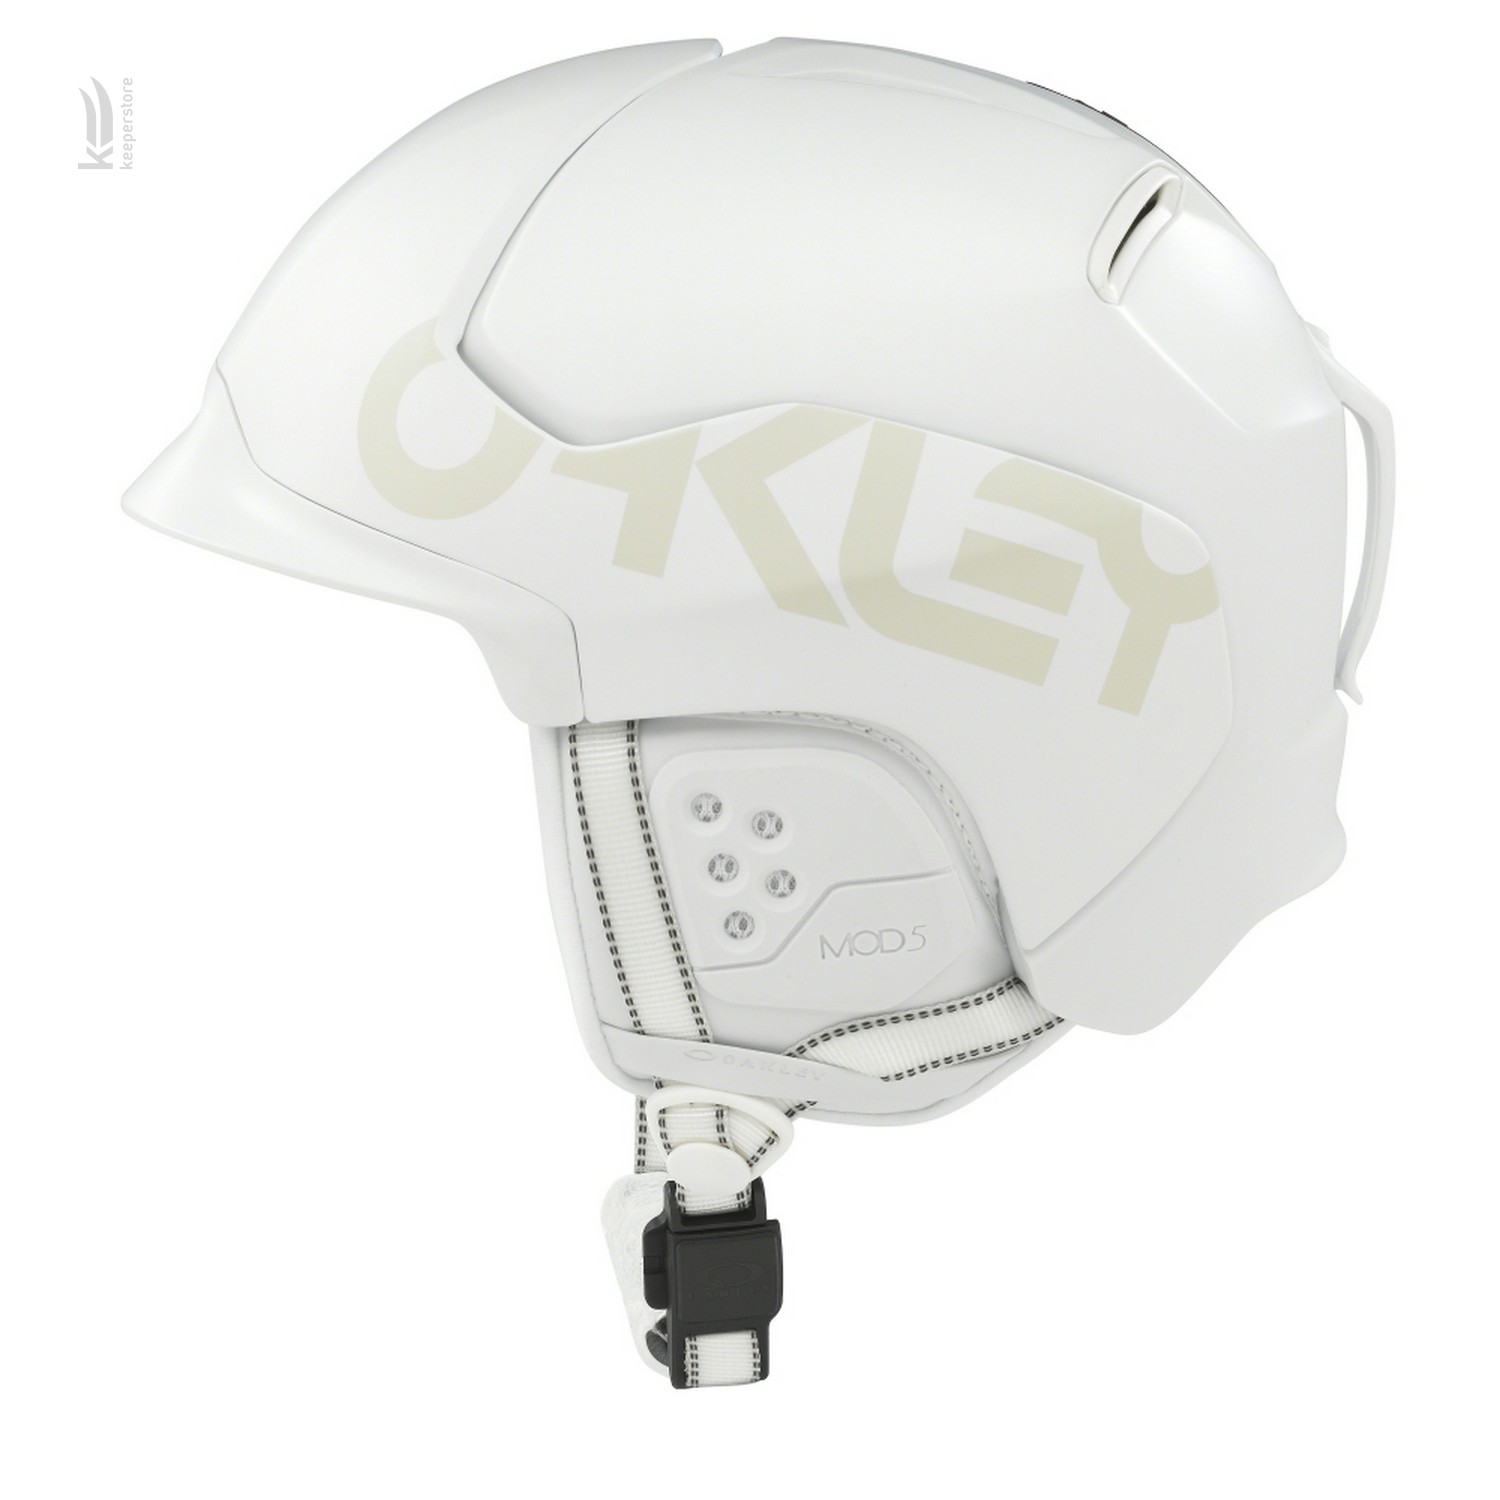 Шлем Oakley для сноубординга Oakley Mod 5 Factory Pilot Matte White 19/20